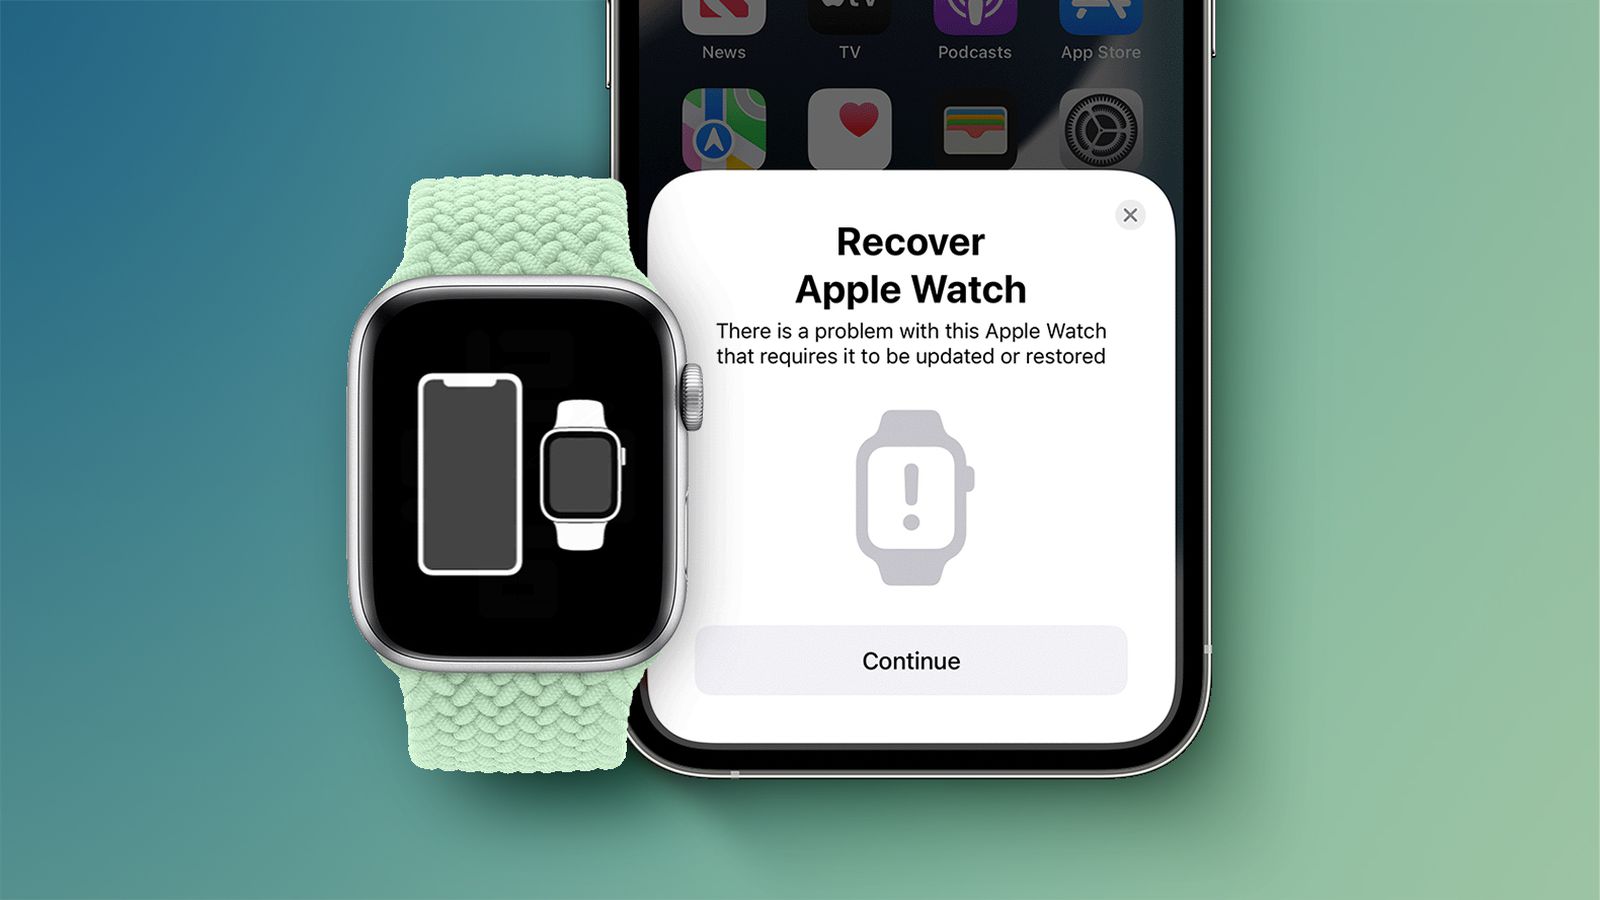 Khôi phục Apple Watch: Sẵn sàng để trải nghiệm lại cuộc sống đầy đủ với chiếc Apple Watch của bạn? Chúng tôi đem đến giải pháp khôi phục đầy tin cậy để máy của bạn hoạt động trơn tru như ban đầu. Click để xem chi tiết và khám phá ngay!